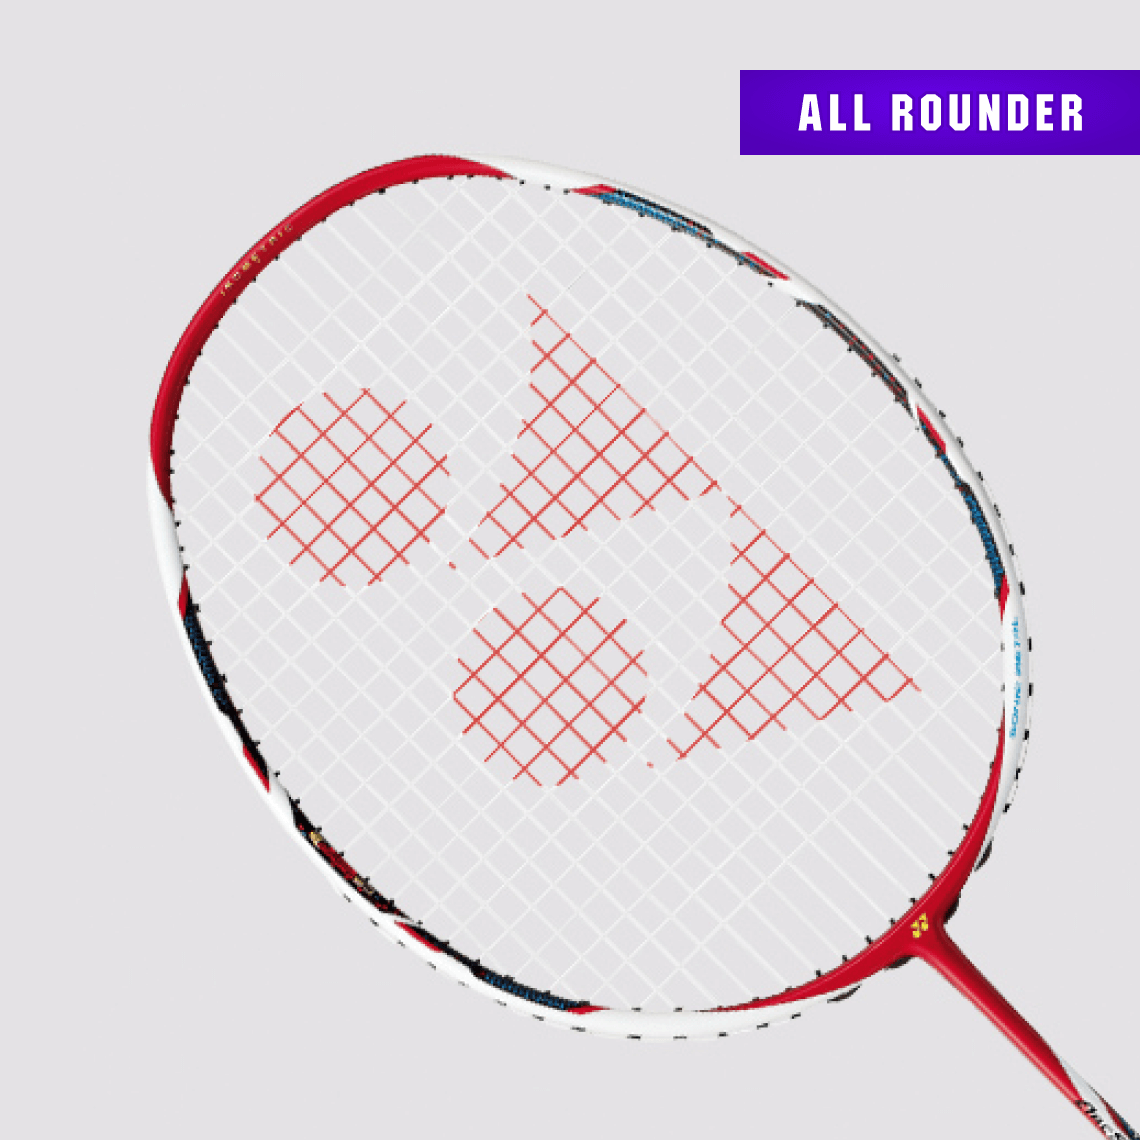 YONEX Arcsaber 11 Badminton Racket - Thegodofsport - Medium